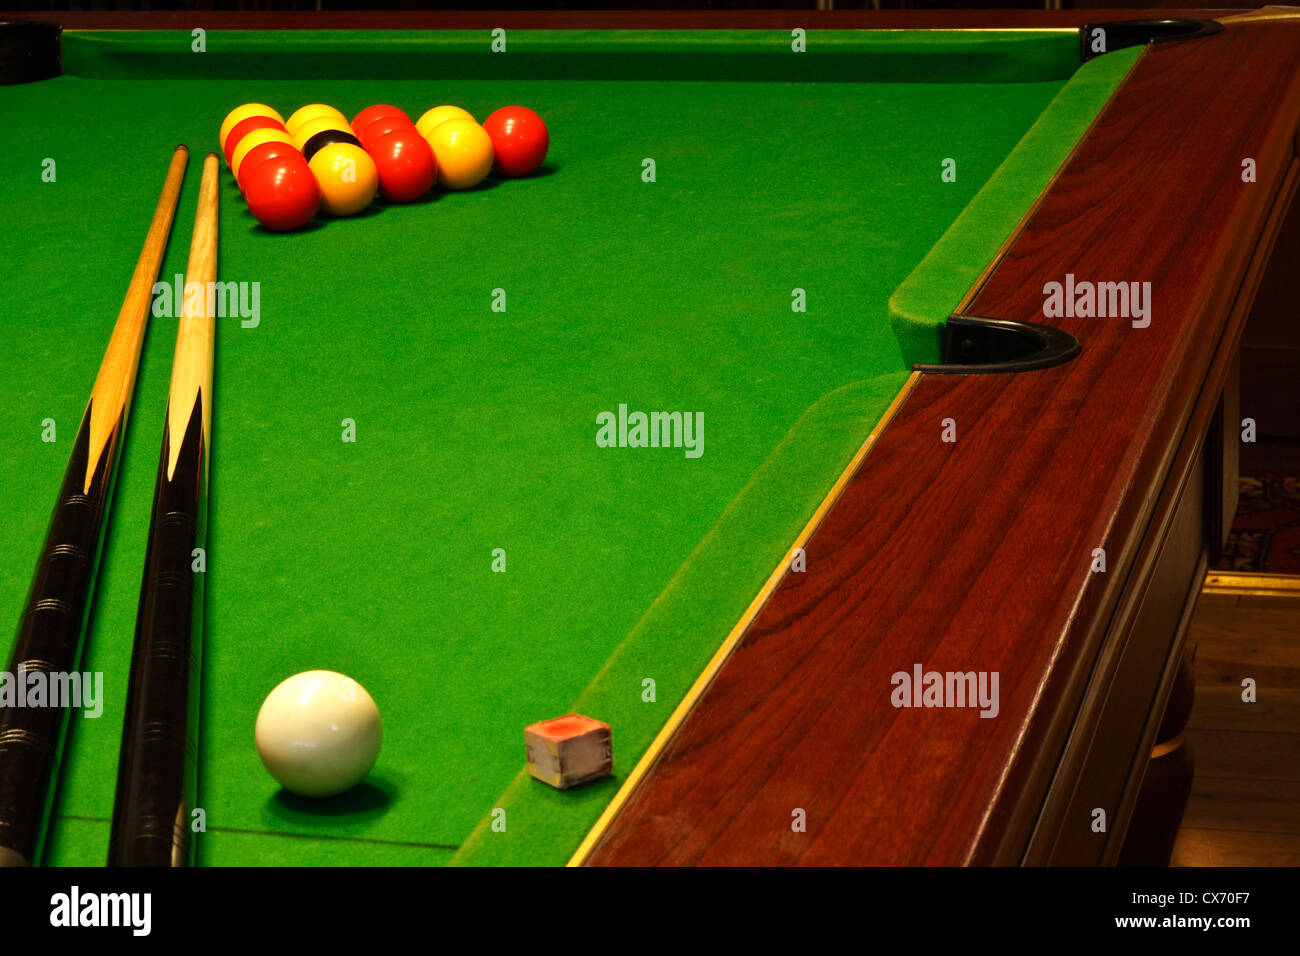 Ein grünes Tuch Billard und Billardtisch mit englischen Liga rote und gelbe  Kugeln Stockfotografie - Alamy